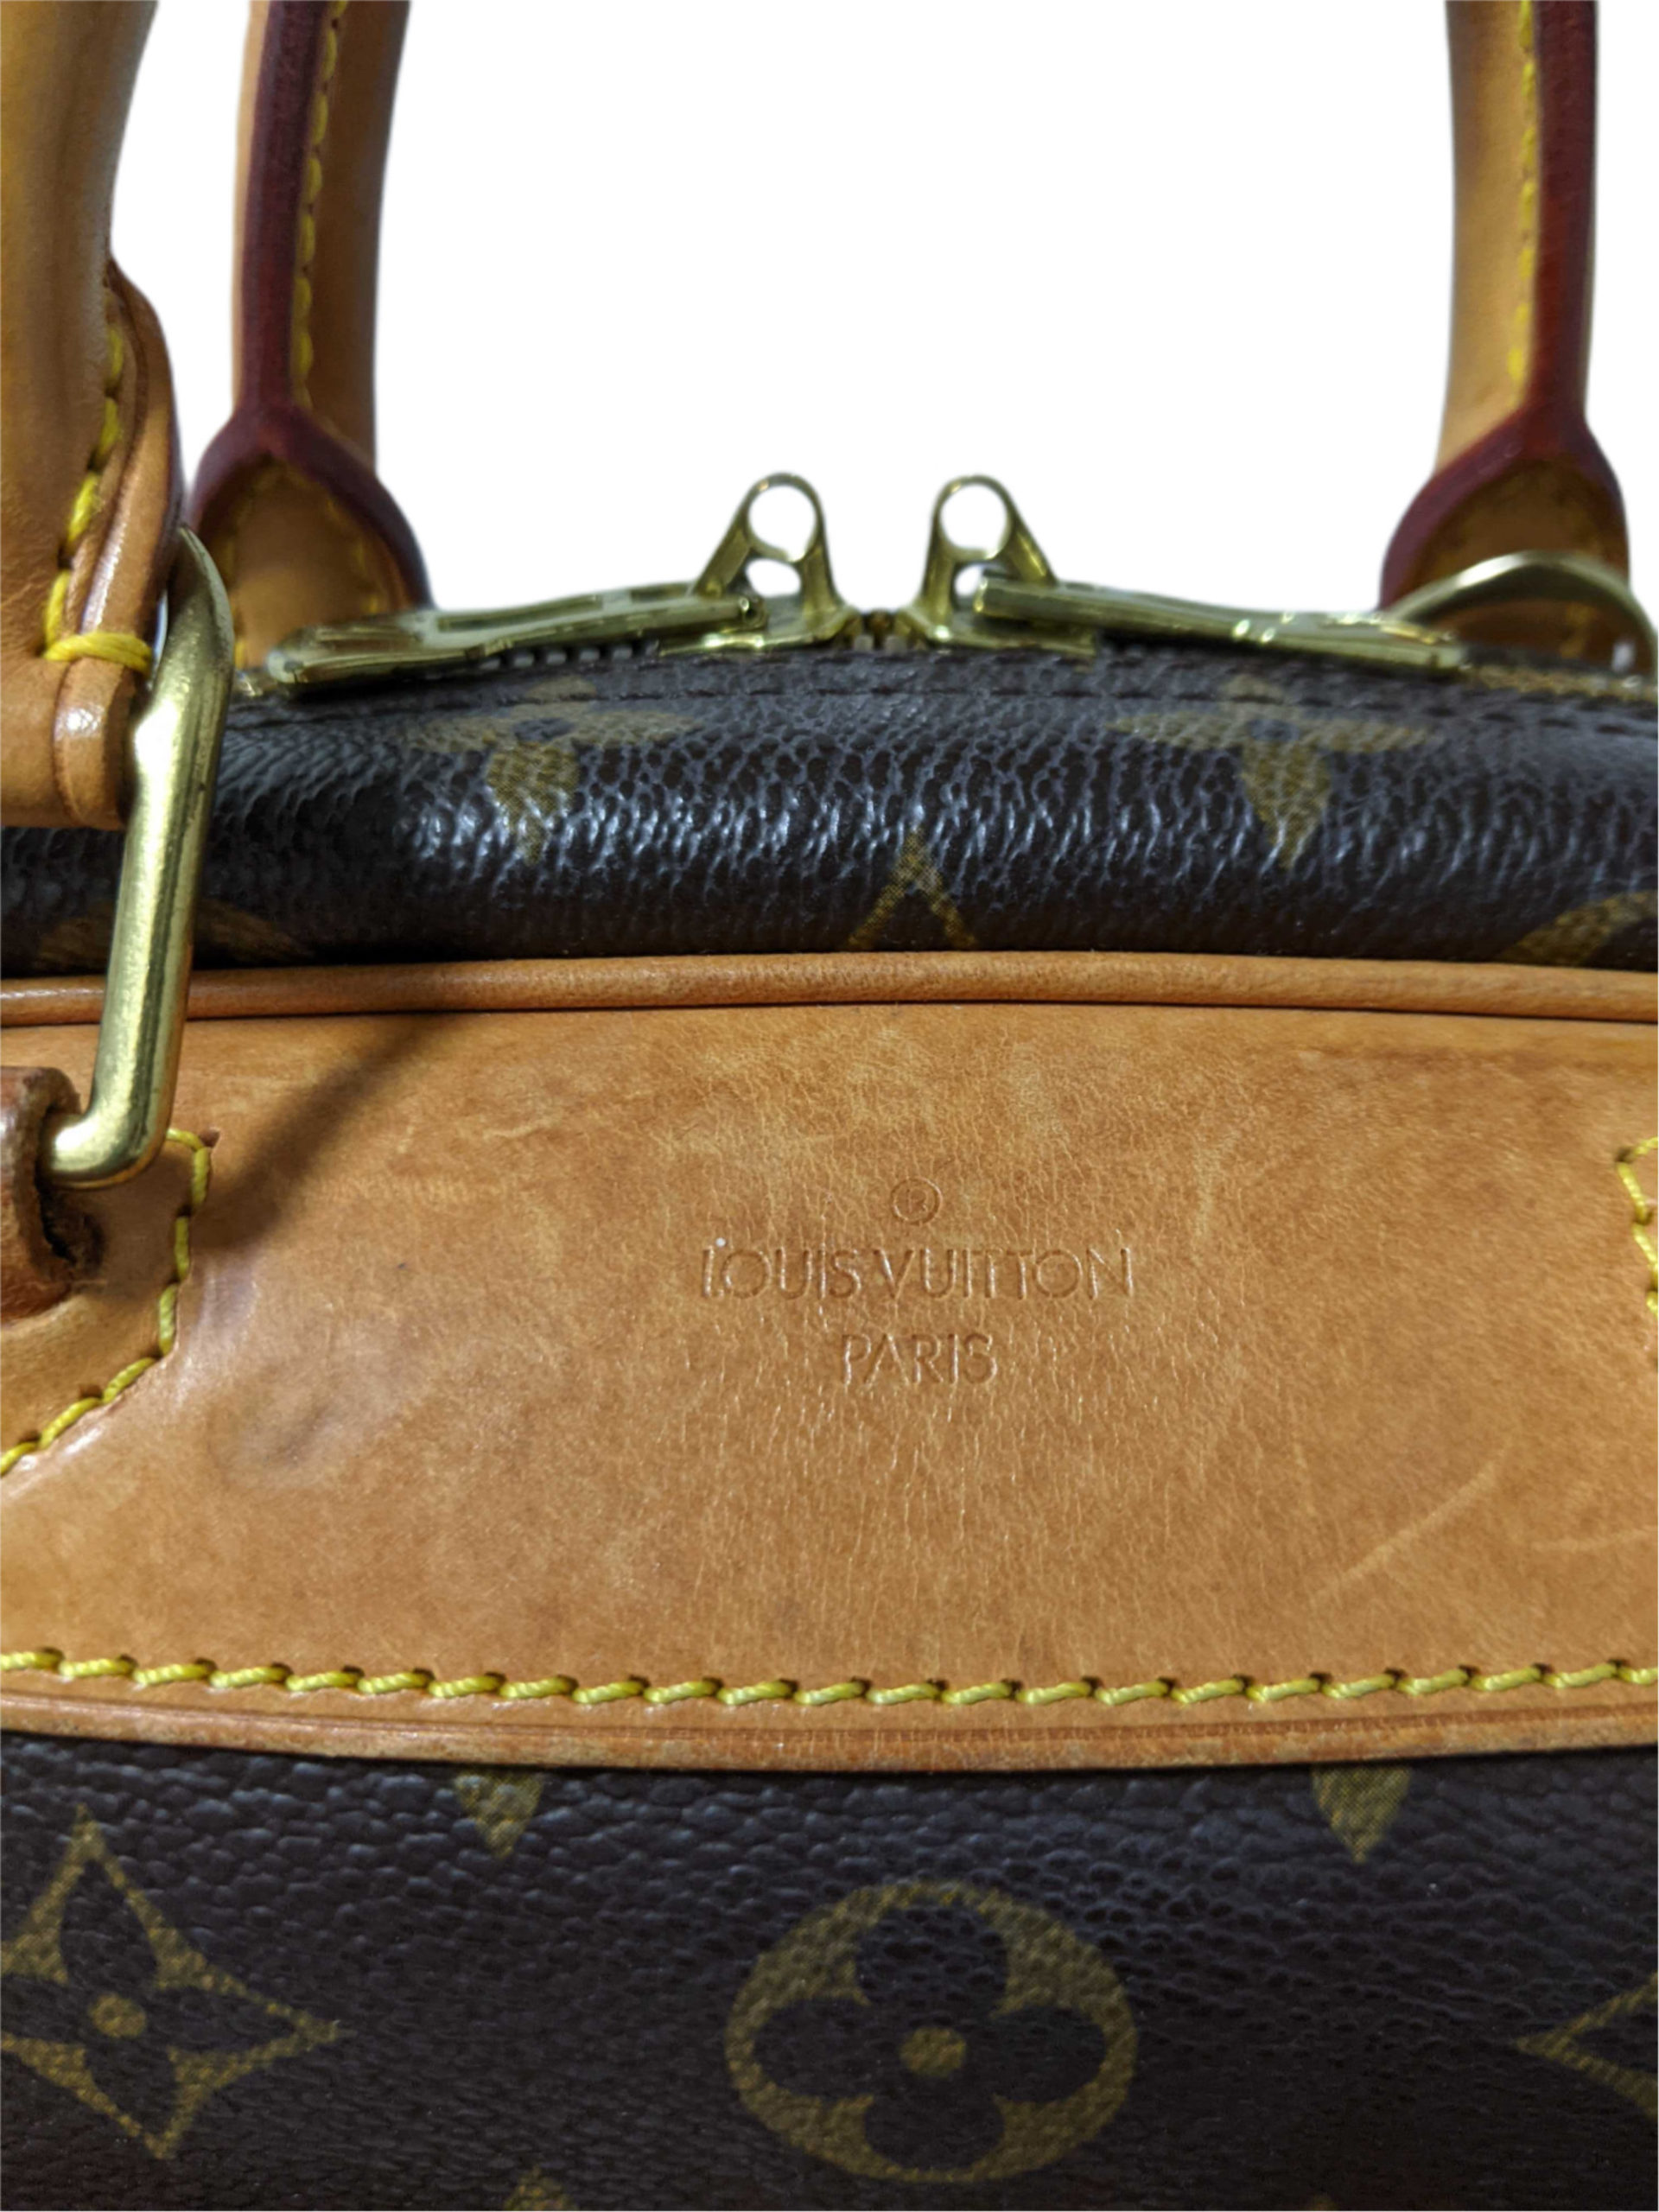 Louis Vuitton Trouville M42228 Monogram Canvas Handbag Brown